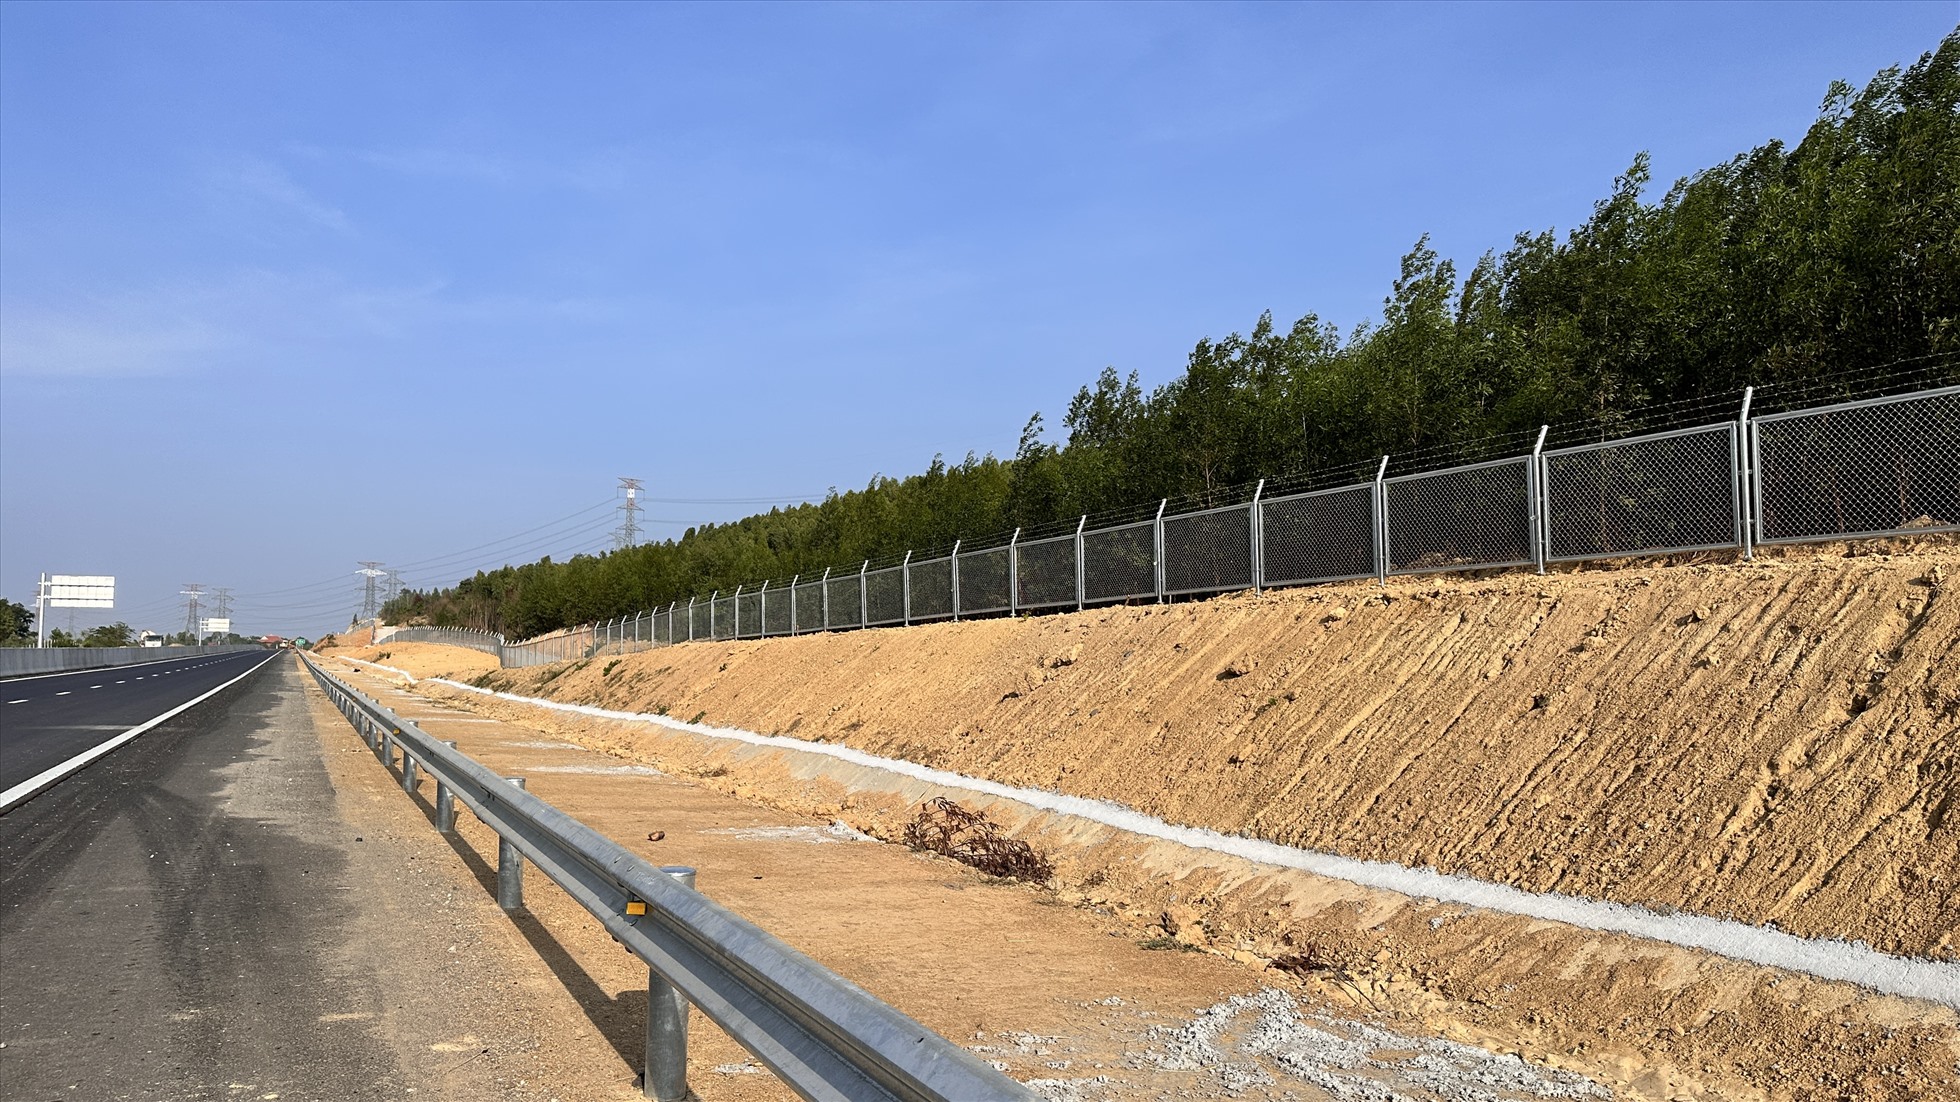 Hàng rào bảo vệ cao tốc đã được rào dọc 2 bên tuyến cao tốc. Ảnh: Duy Tuấn